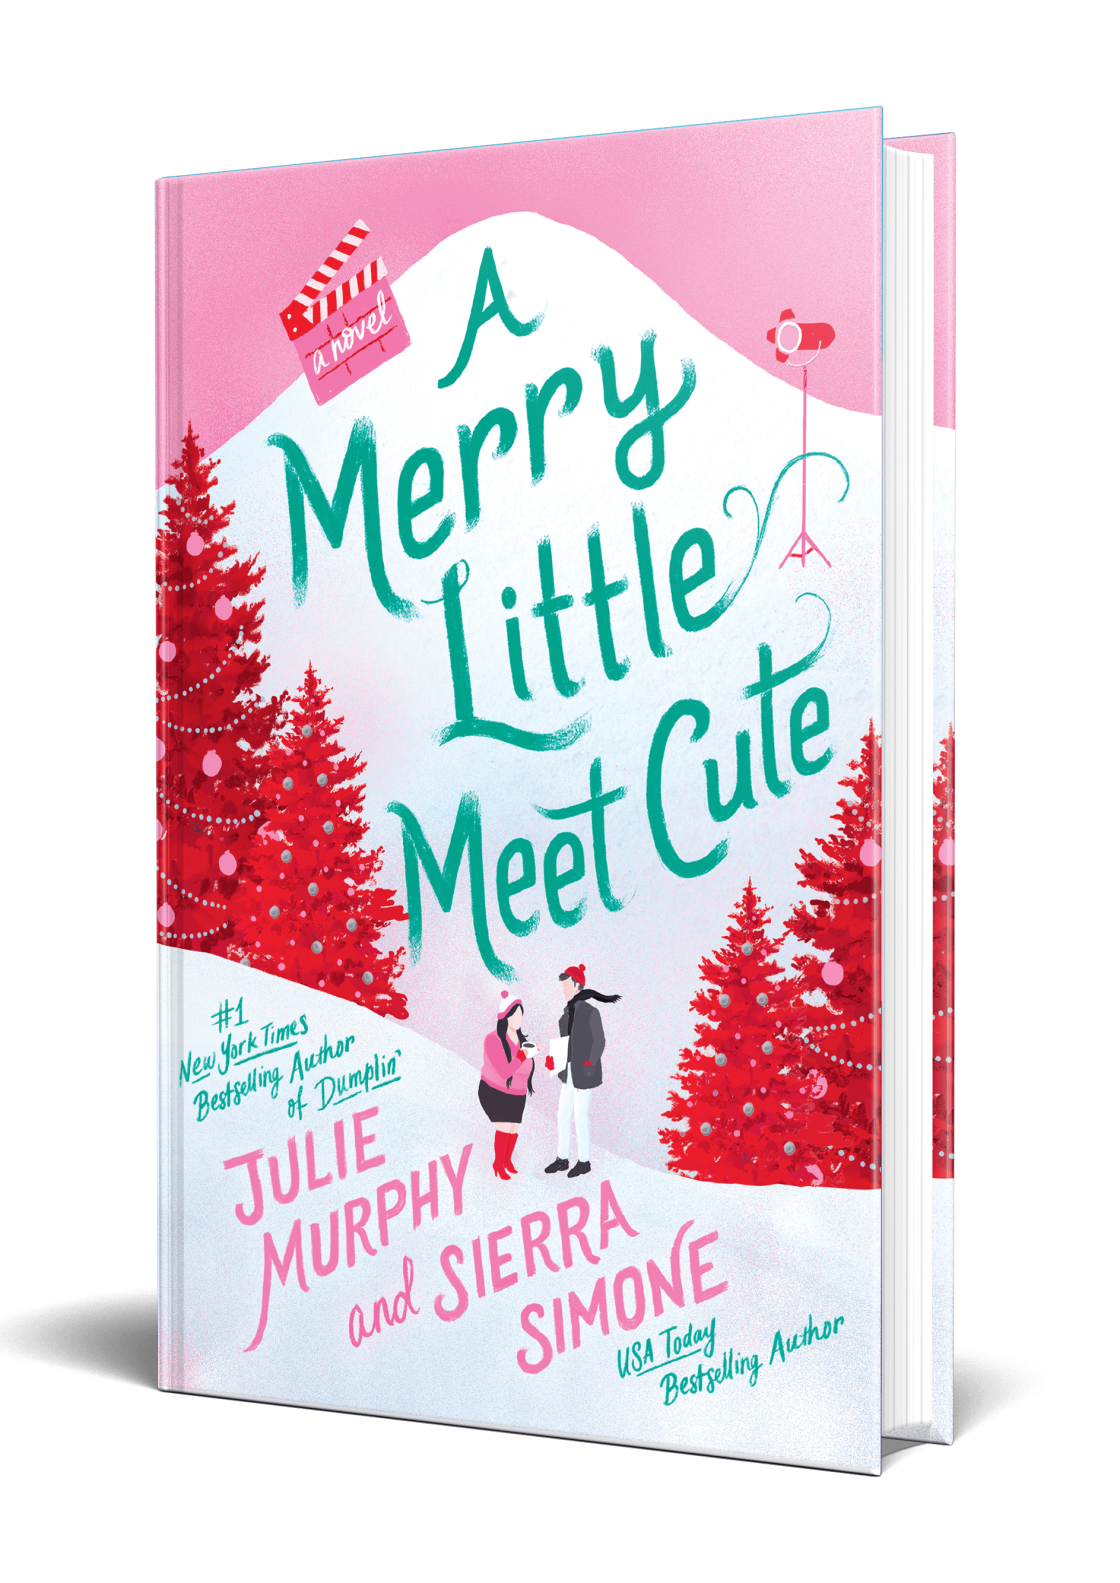 A Merry Little Meet Cute by Julie Murphy and Sierra Simone